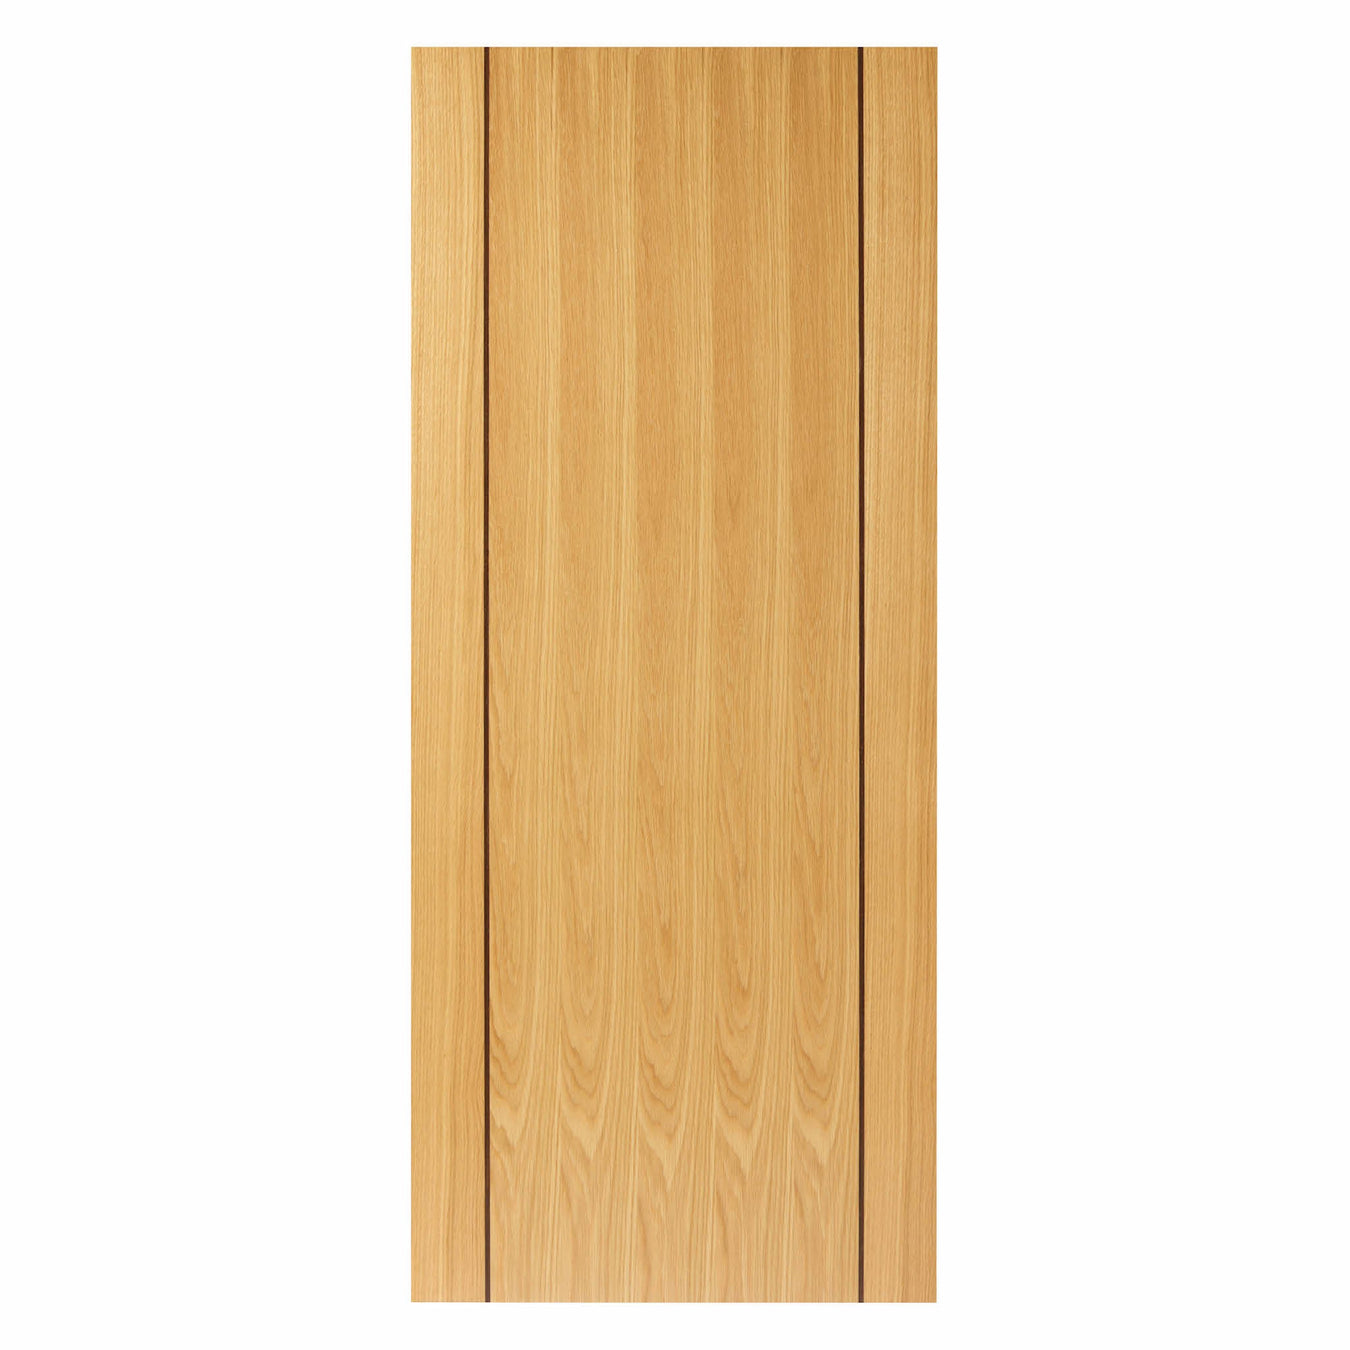 Oak Contemporary Doors